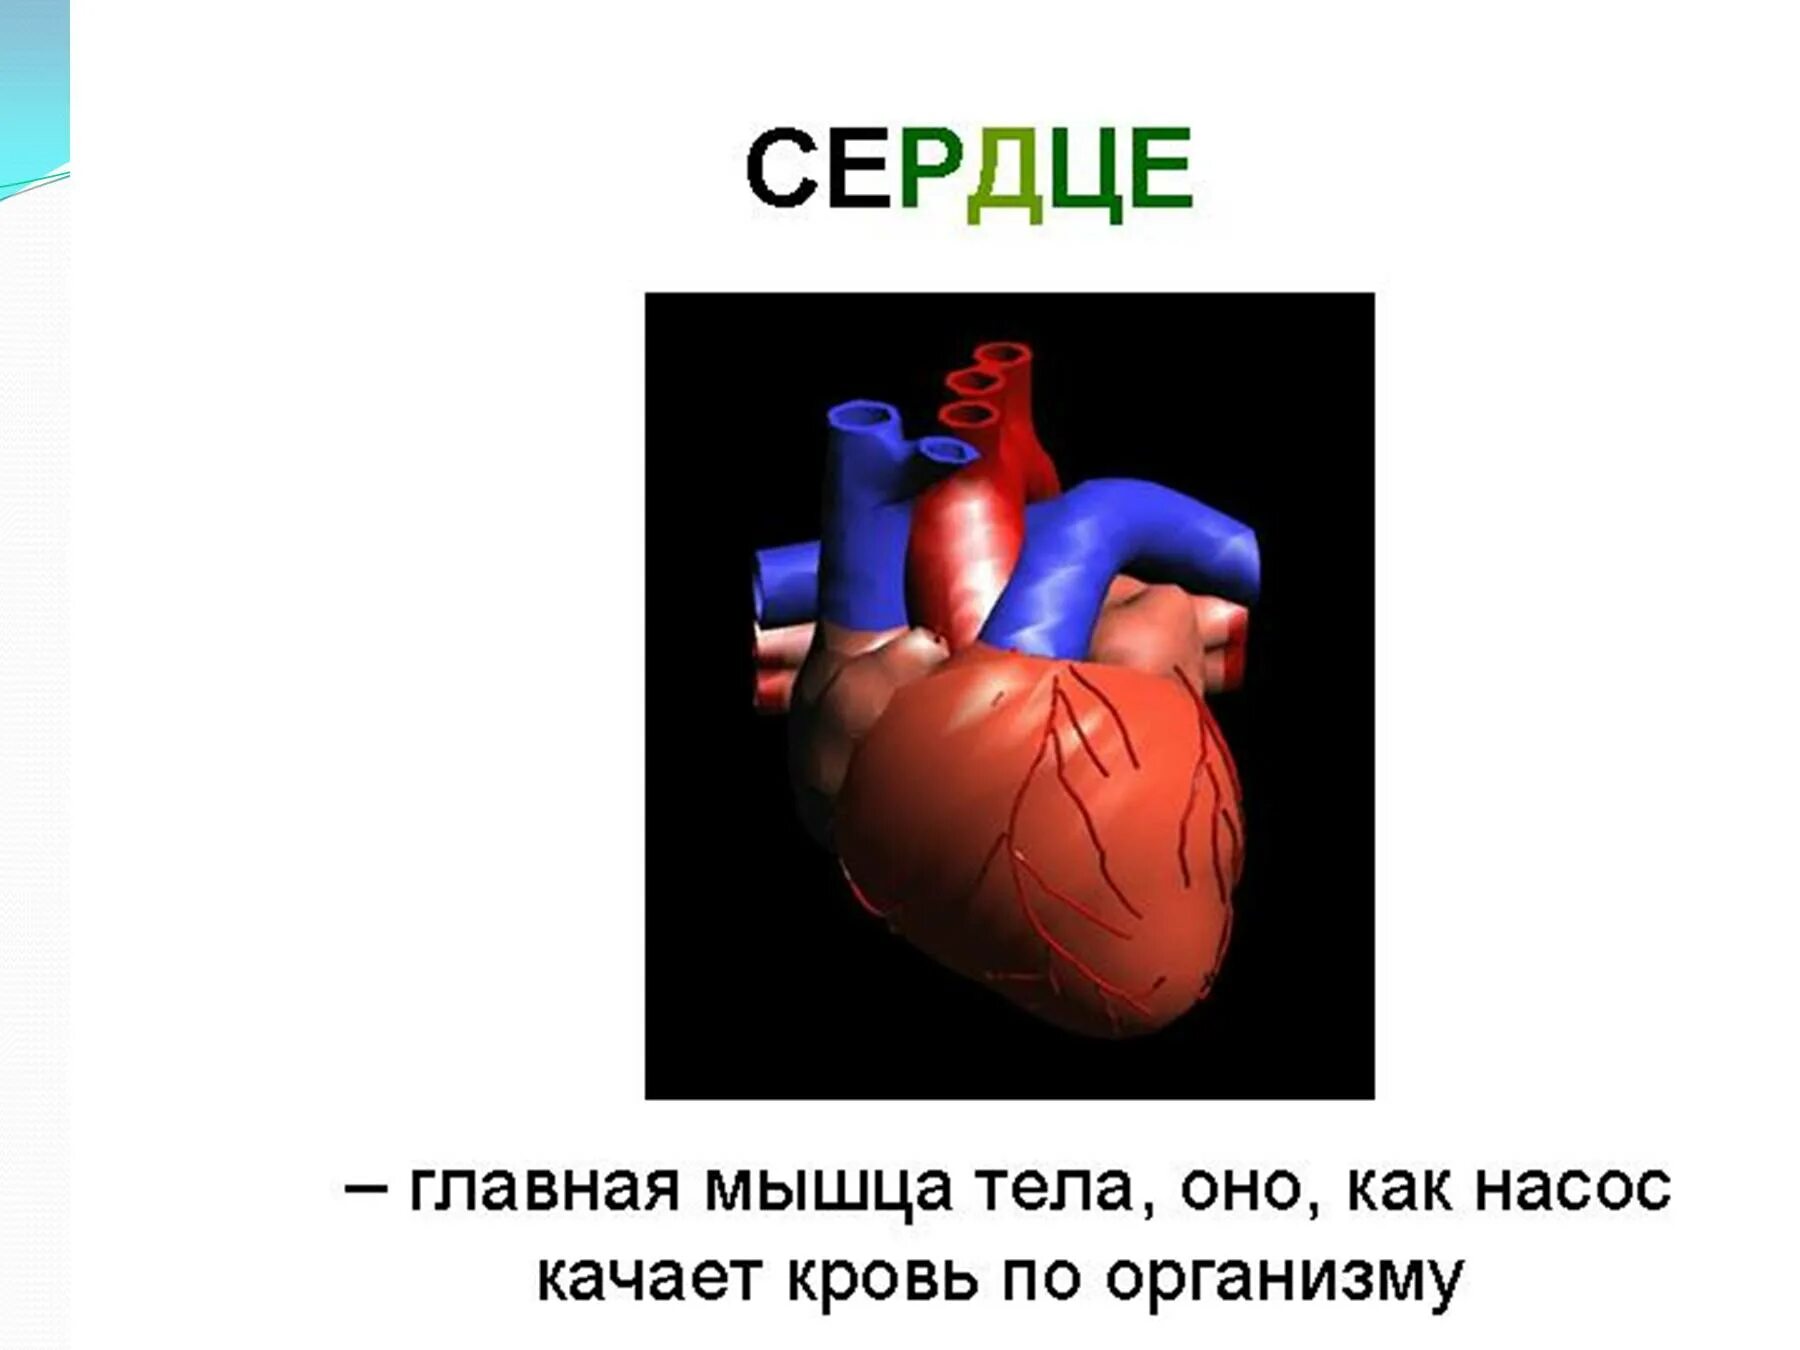 Сердце человека литература. Строение сердца человека. Сердце человека для презентации. Сообщение о сердце человека. Доклад о сердце человека.